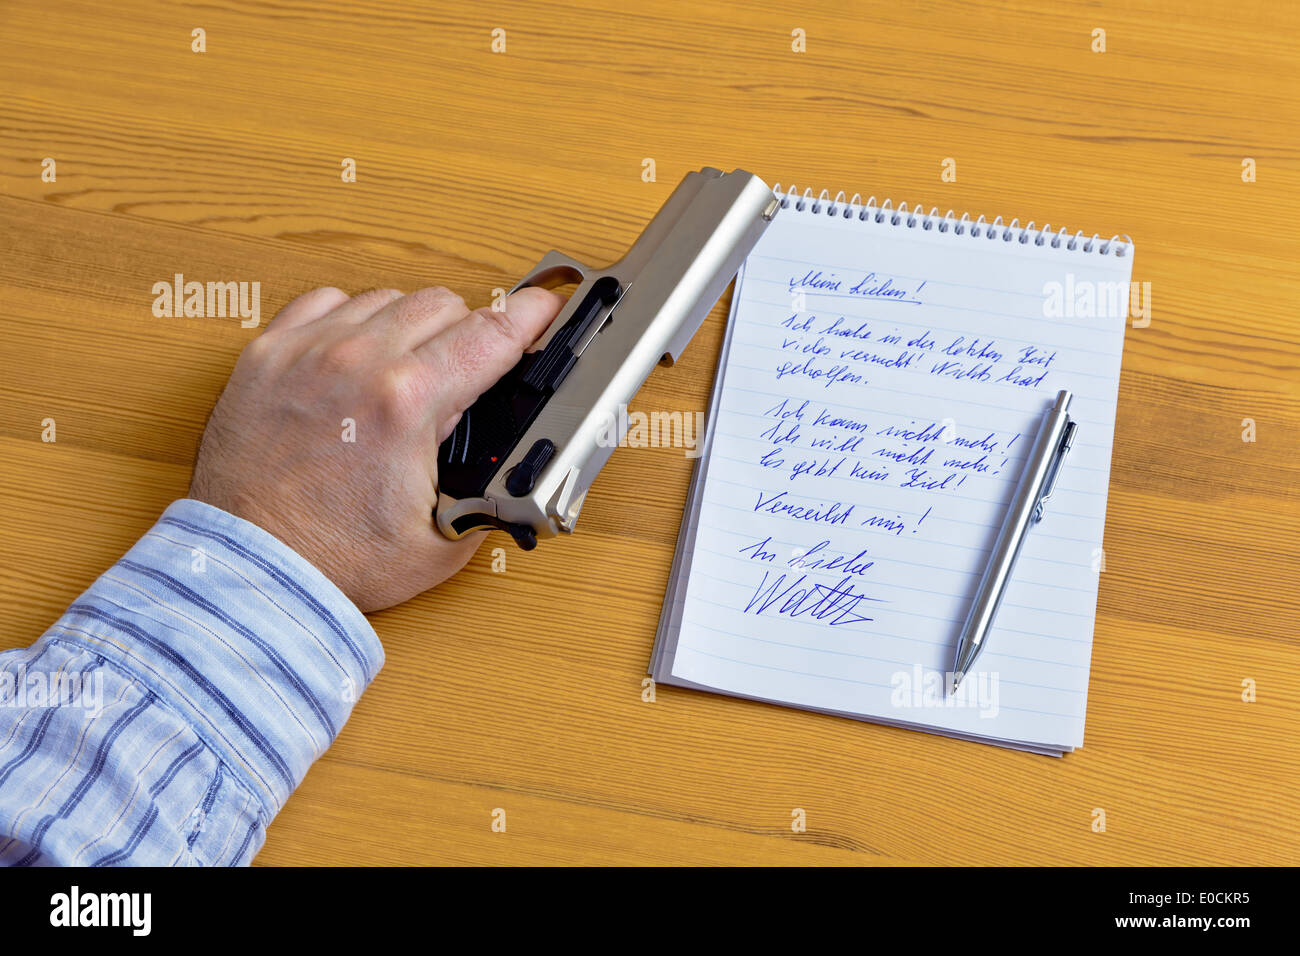 A resignation letter and the gun of a selfmurderer., Ein Abschieds Brief und die Pistole eines Selbstmoerders. Stock Photo